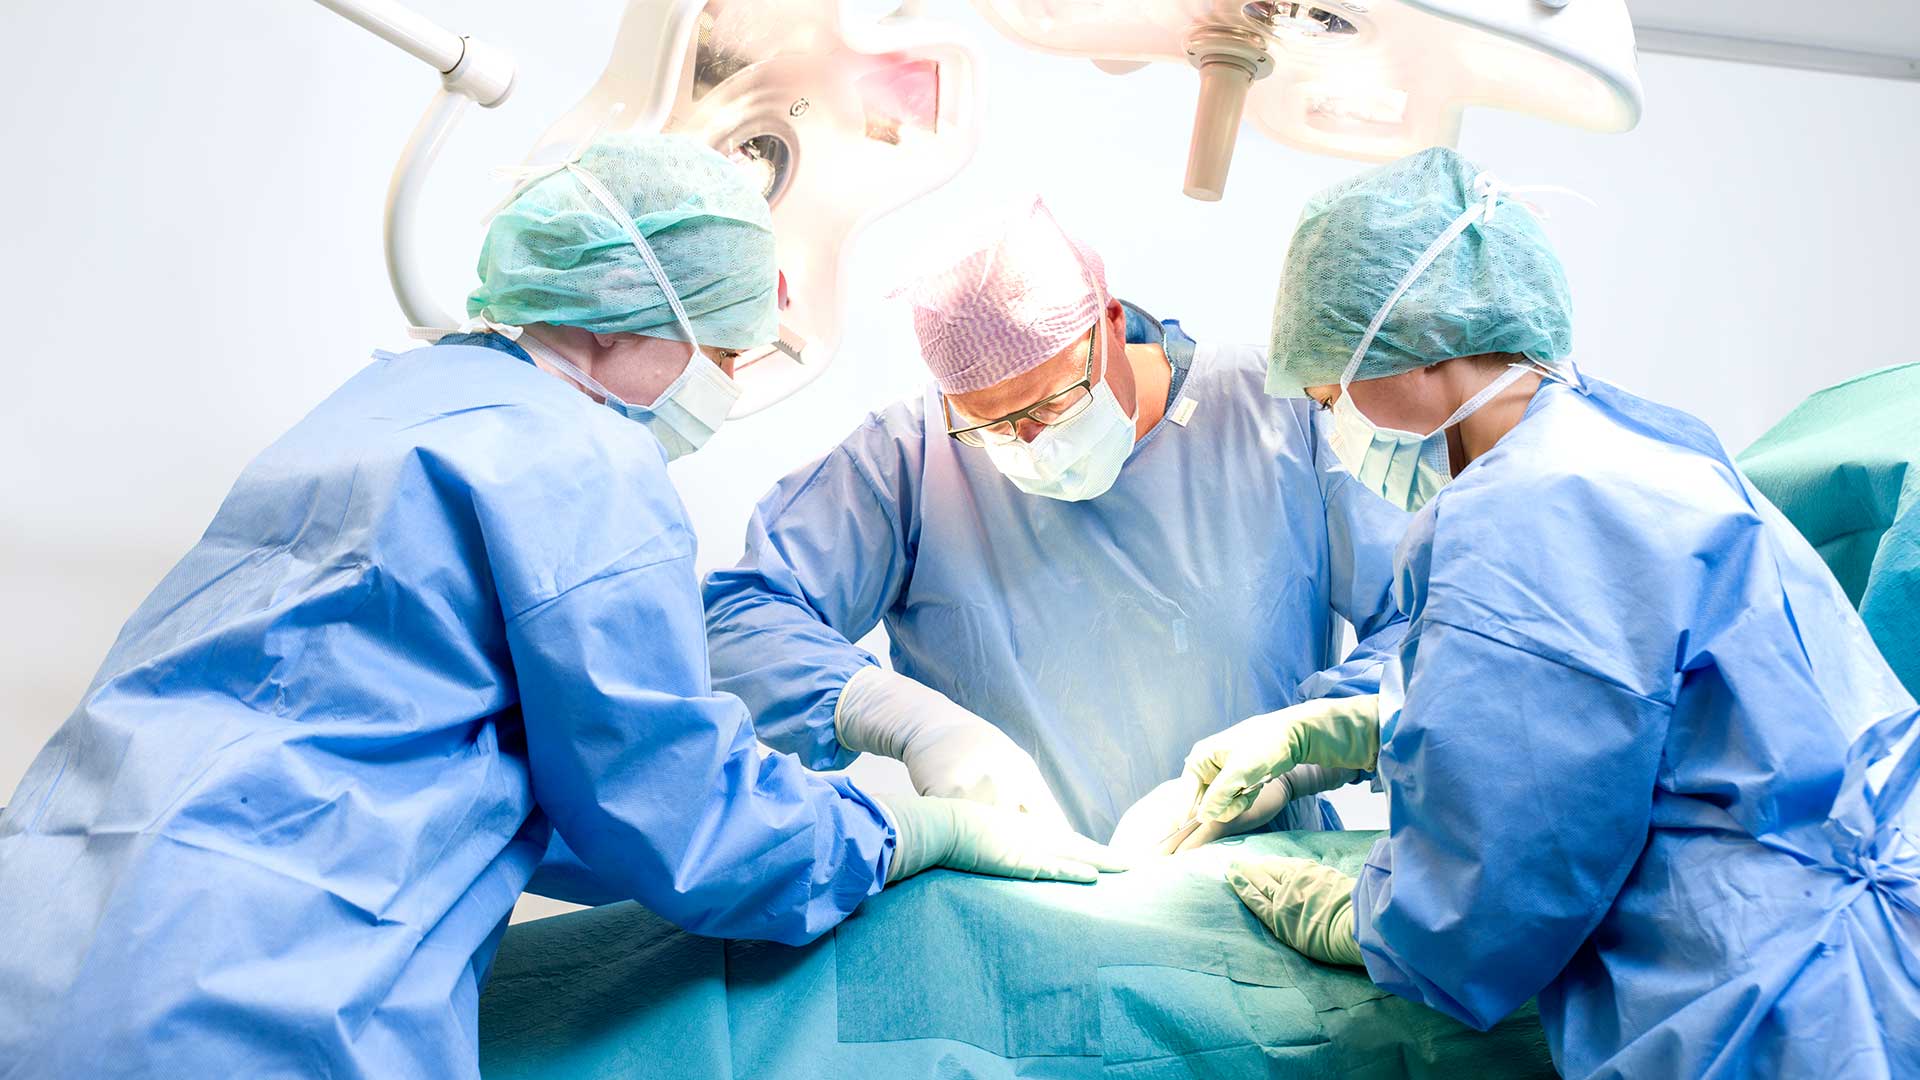 Chirurdzy i pielęgniarki podczas zabiegu na sali operacyjnej